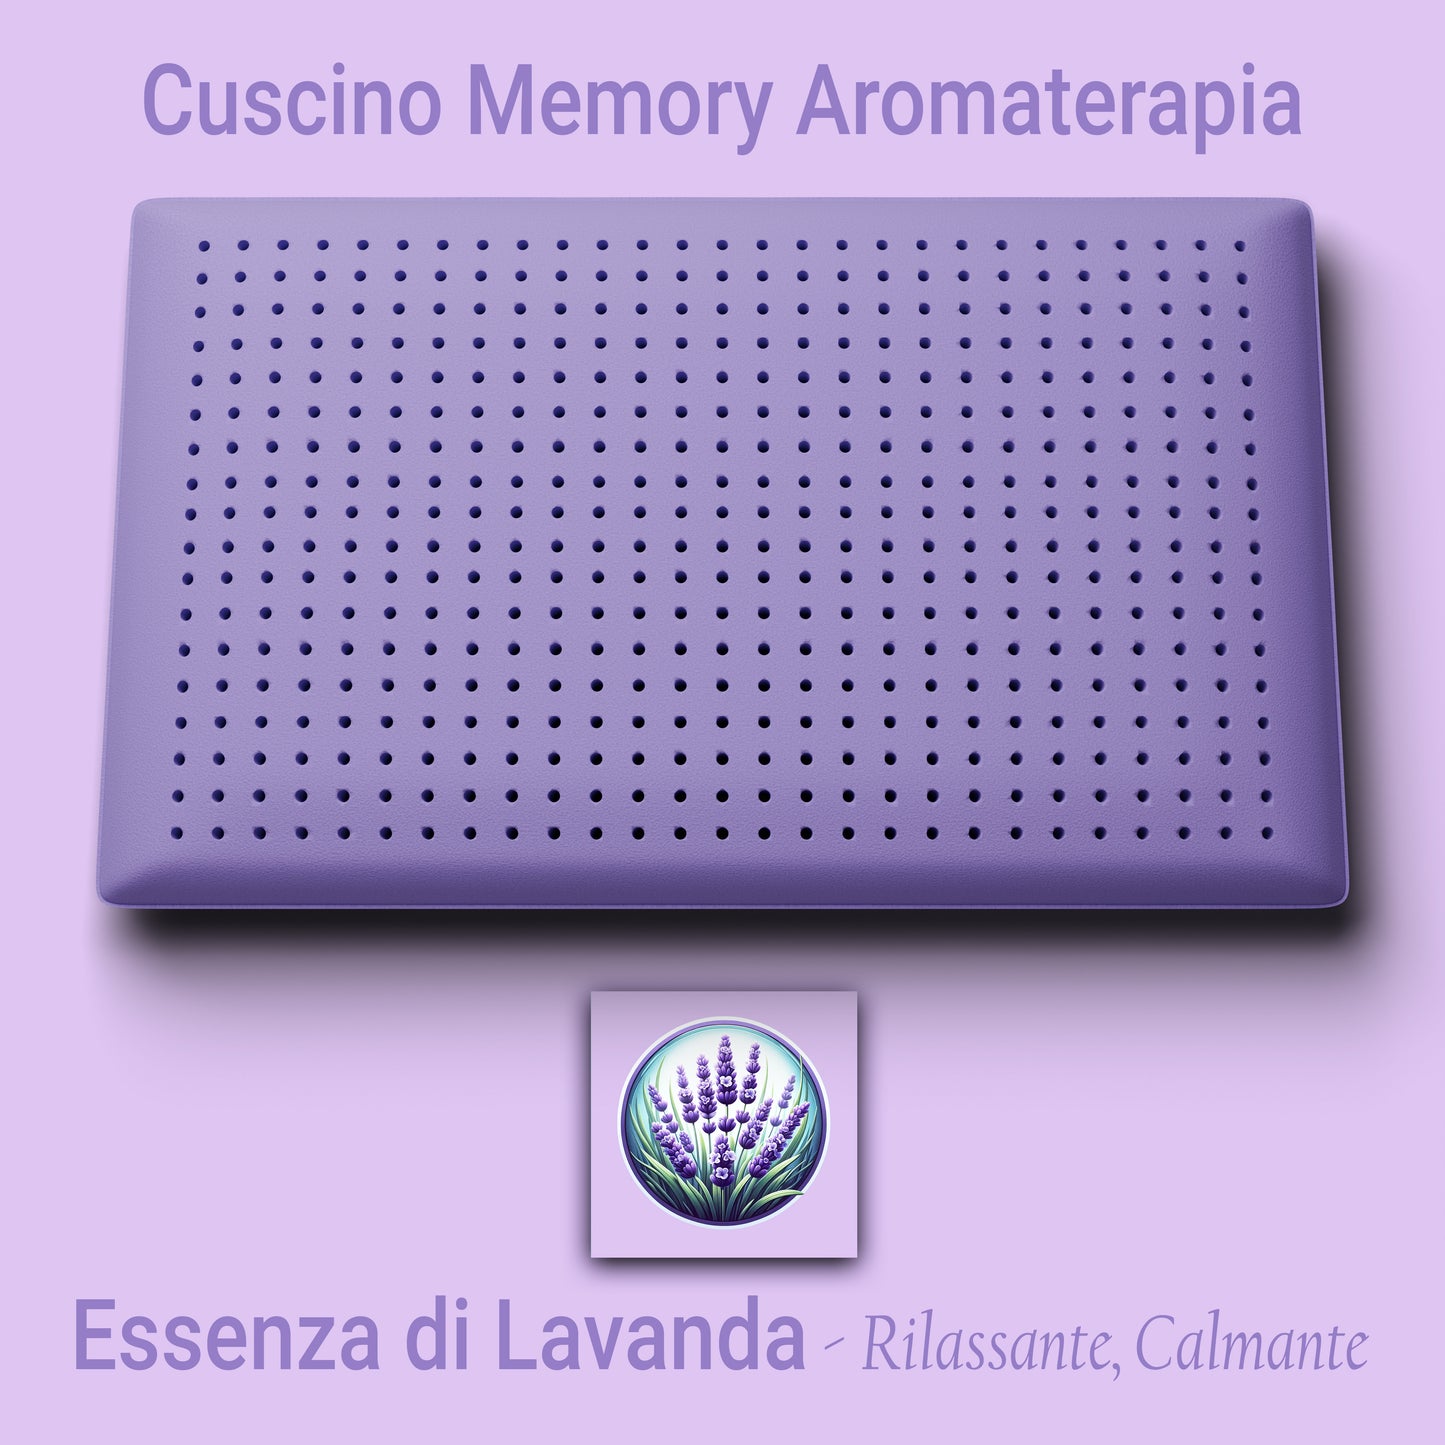 Cuscino Memory Aromaterapia, Cuscino per la Cervicale, Cuscino Profumo Lavanda